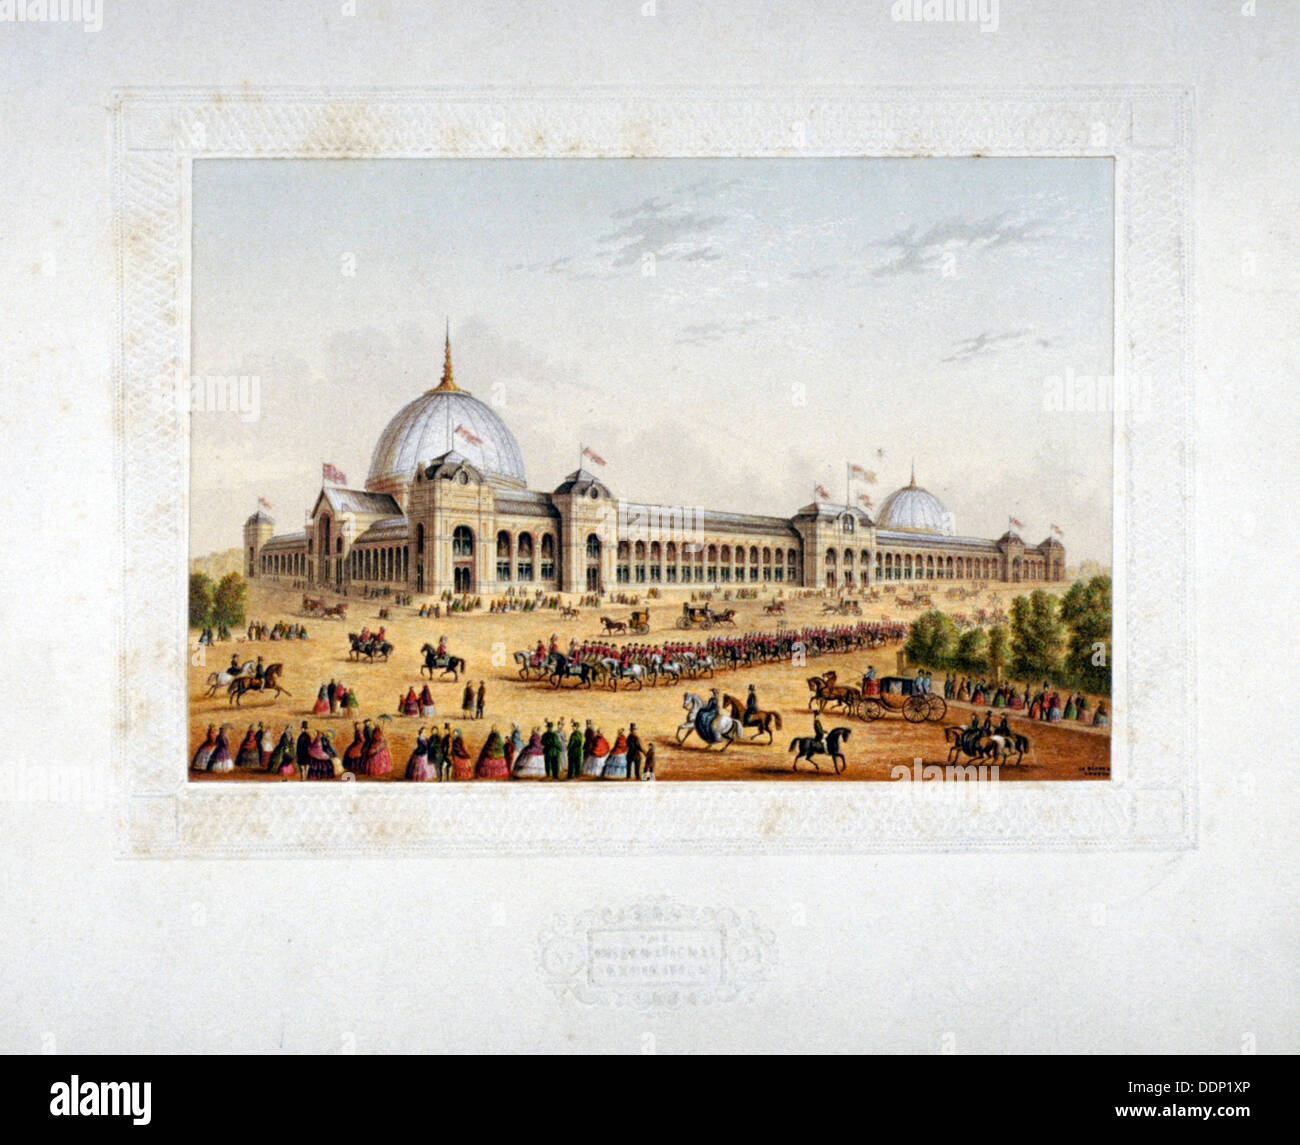 Site de l'Exposition internationale 1862, Cromwell Road, Kensigton, Londres, 1862. Artiste : Anon Banque D'Images